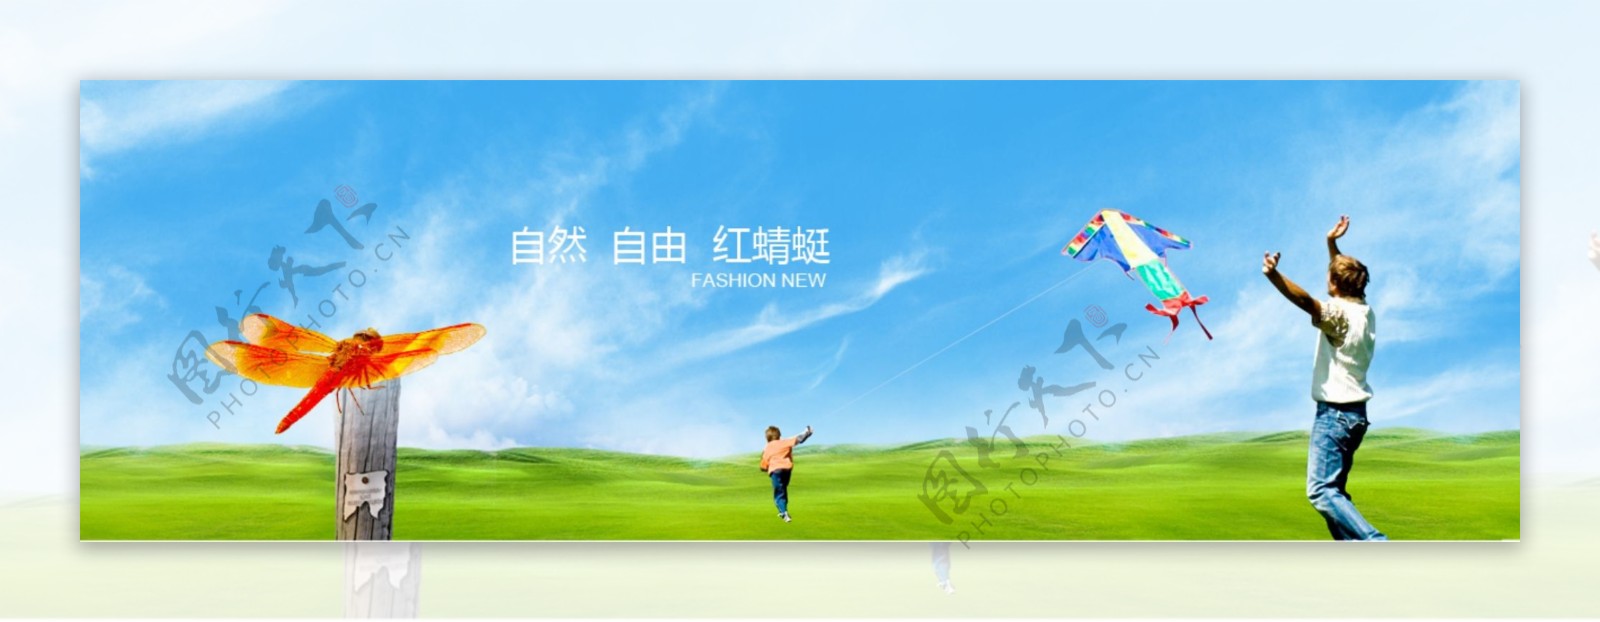 红蜻蜓集团banner设计图片